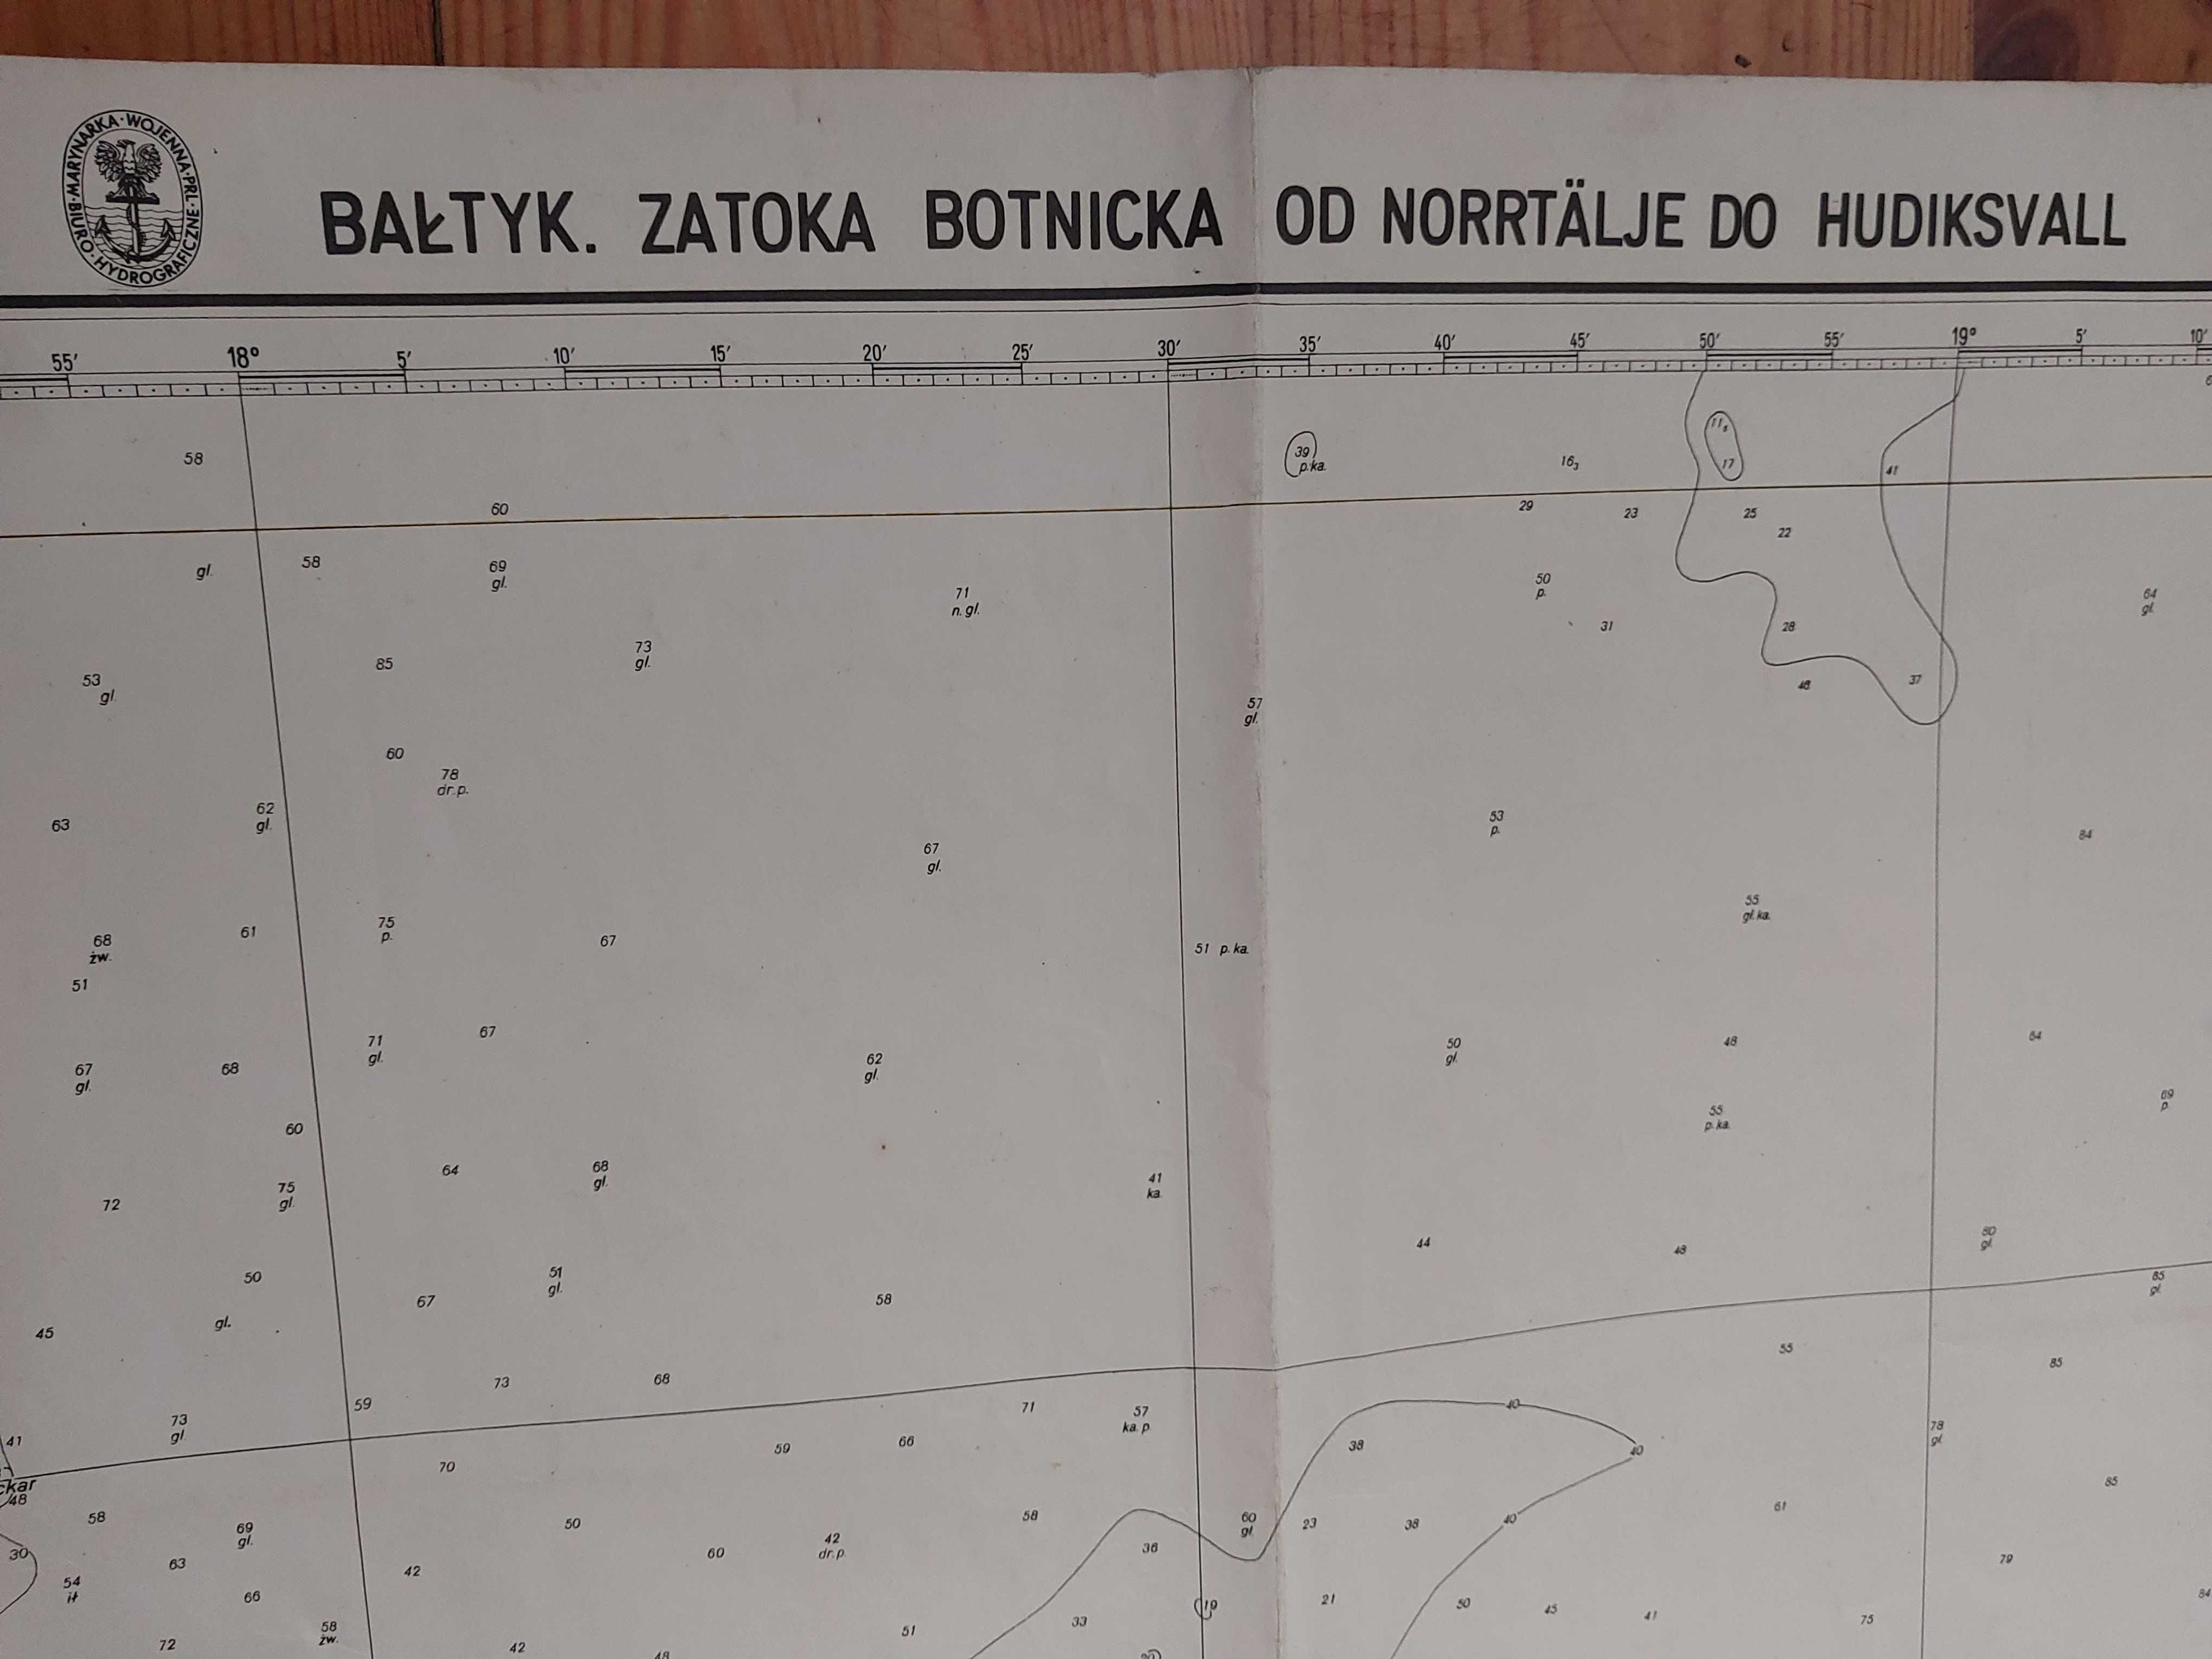 Mapa morska PRL1979: Bałtyk.Zatoka Botnicka od Norrtalje do Hudiksvall